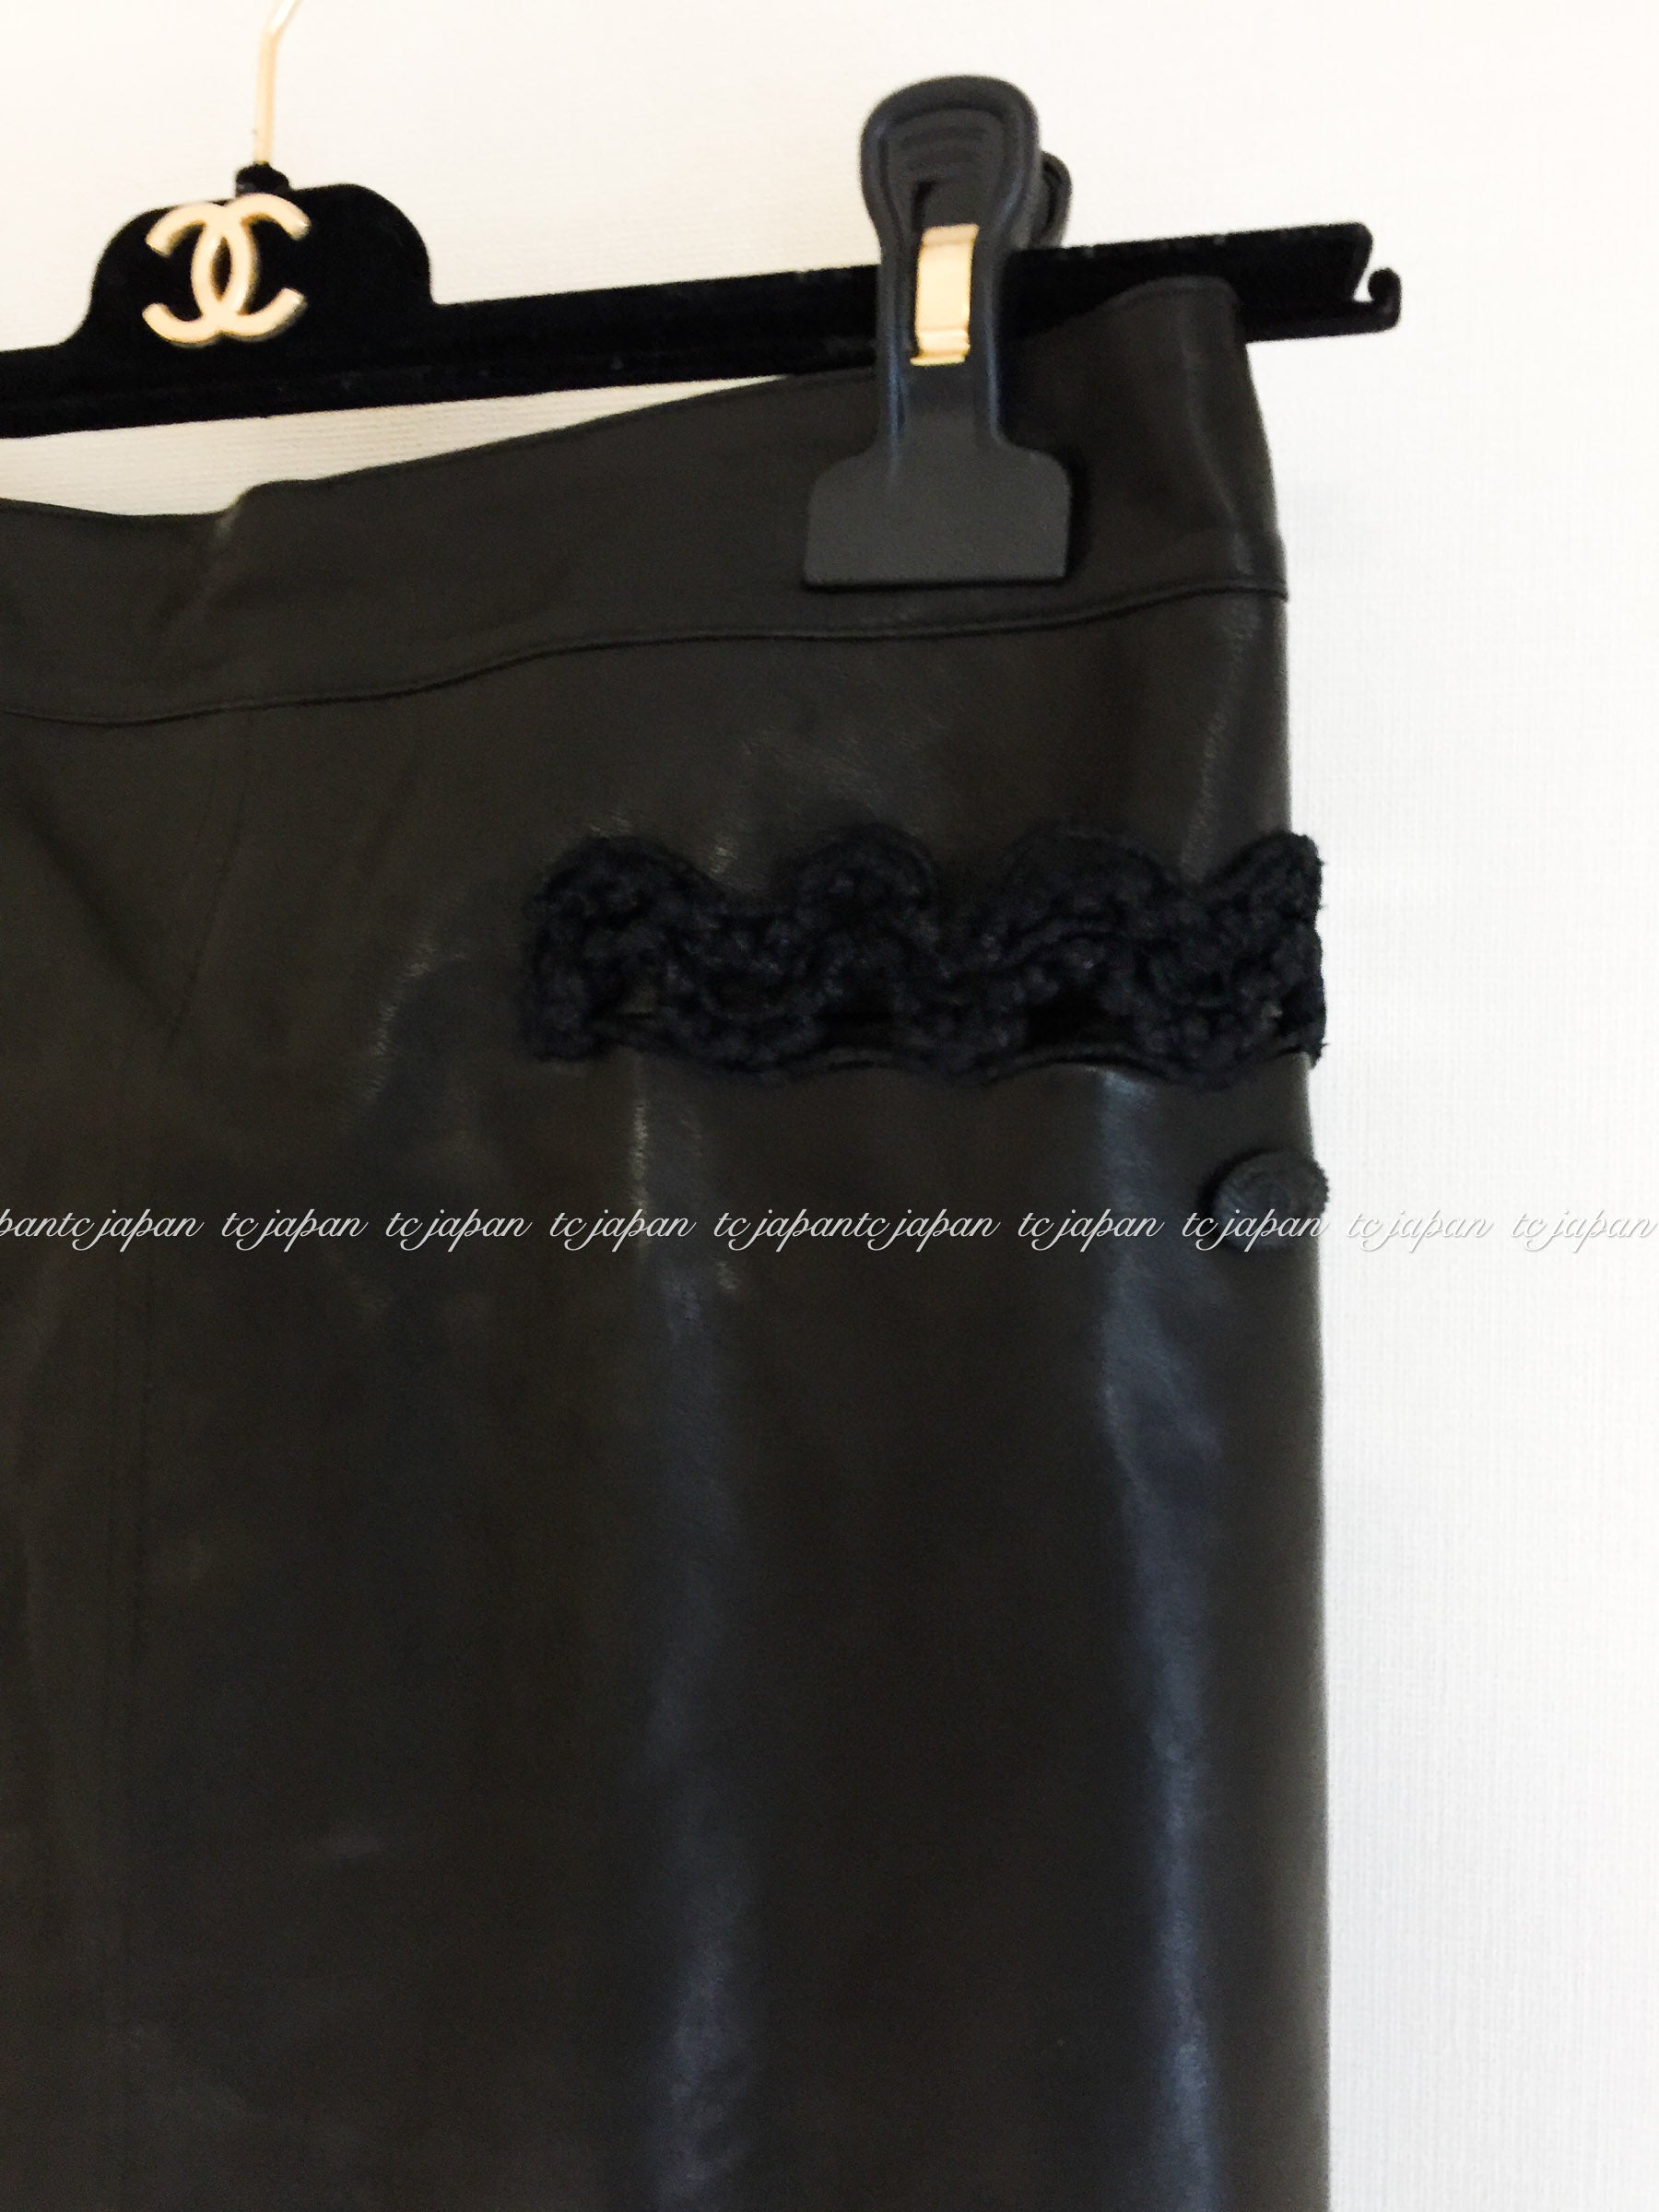 CHANEL 09A Black Brown Leather Jacket Skirt Suit 42 シャネル ブラック・レザー・コート・ジャケット スカート スーツ